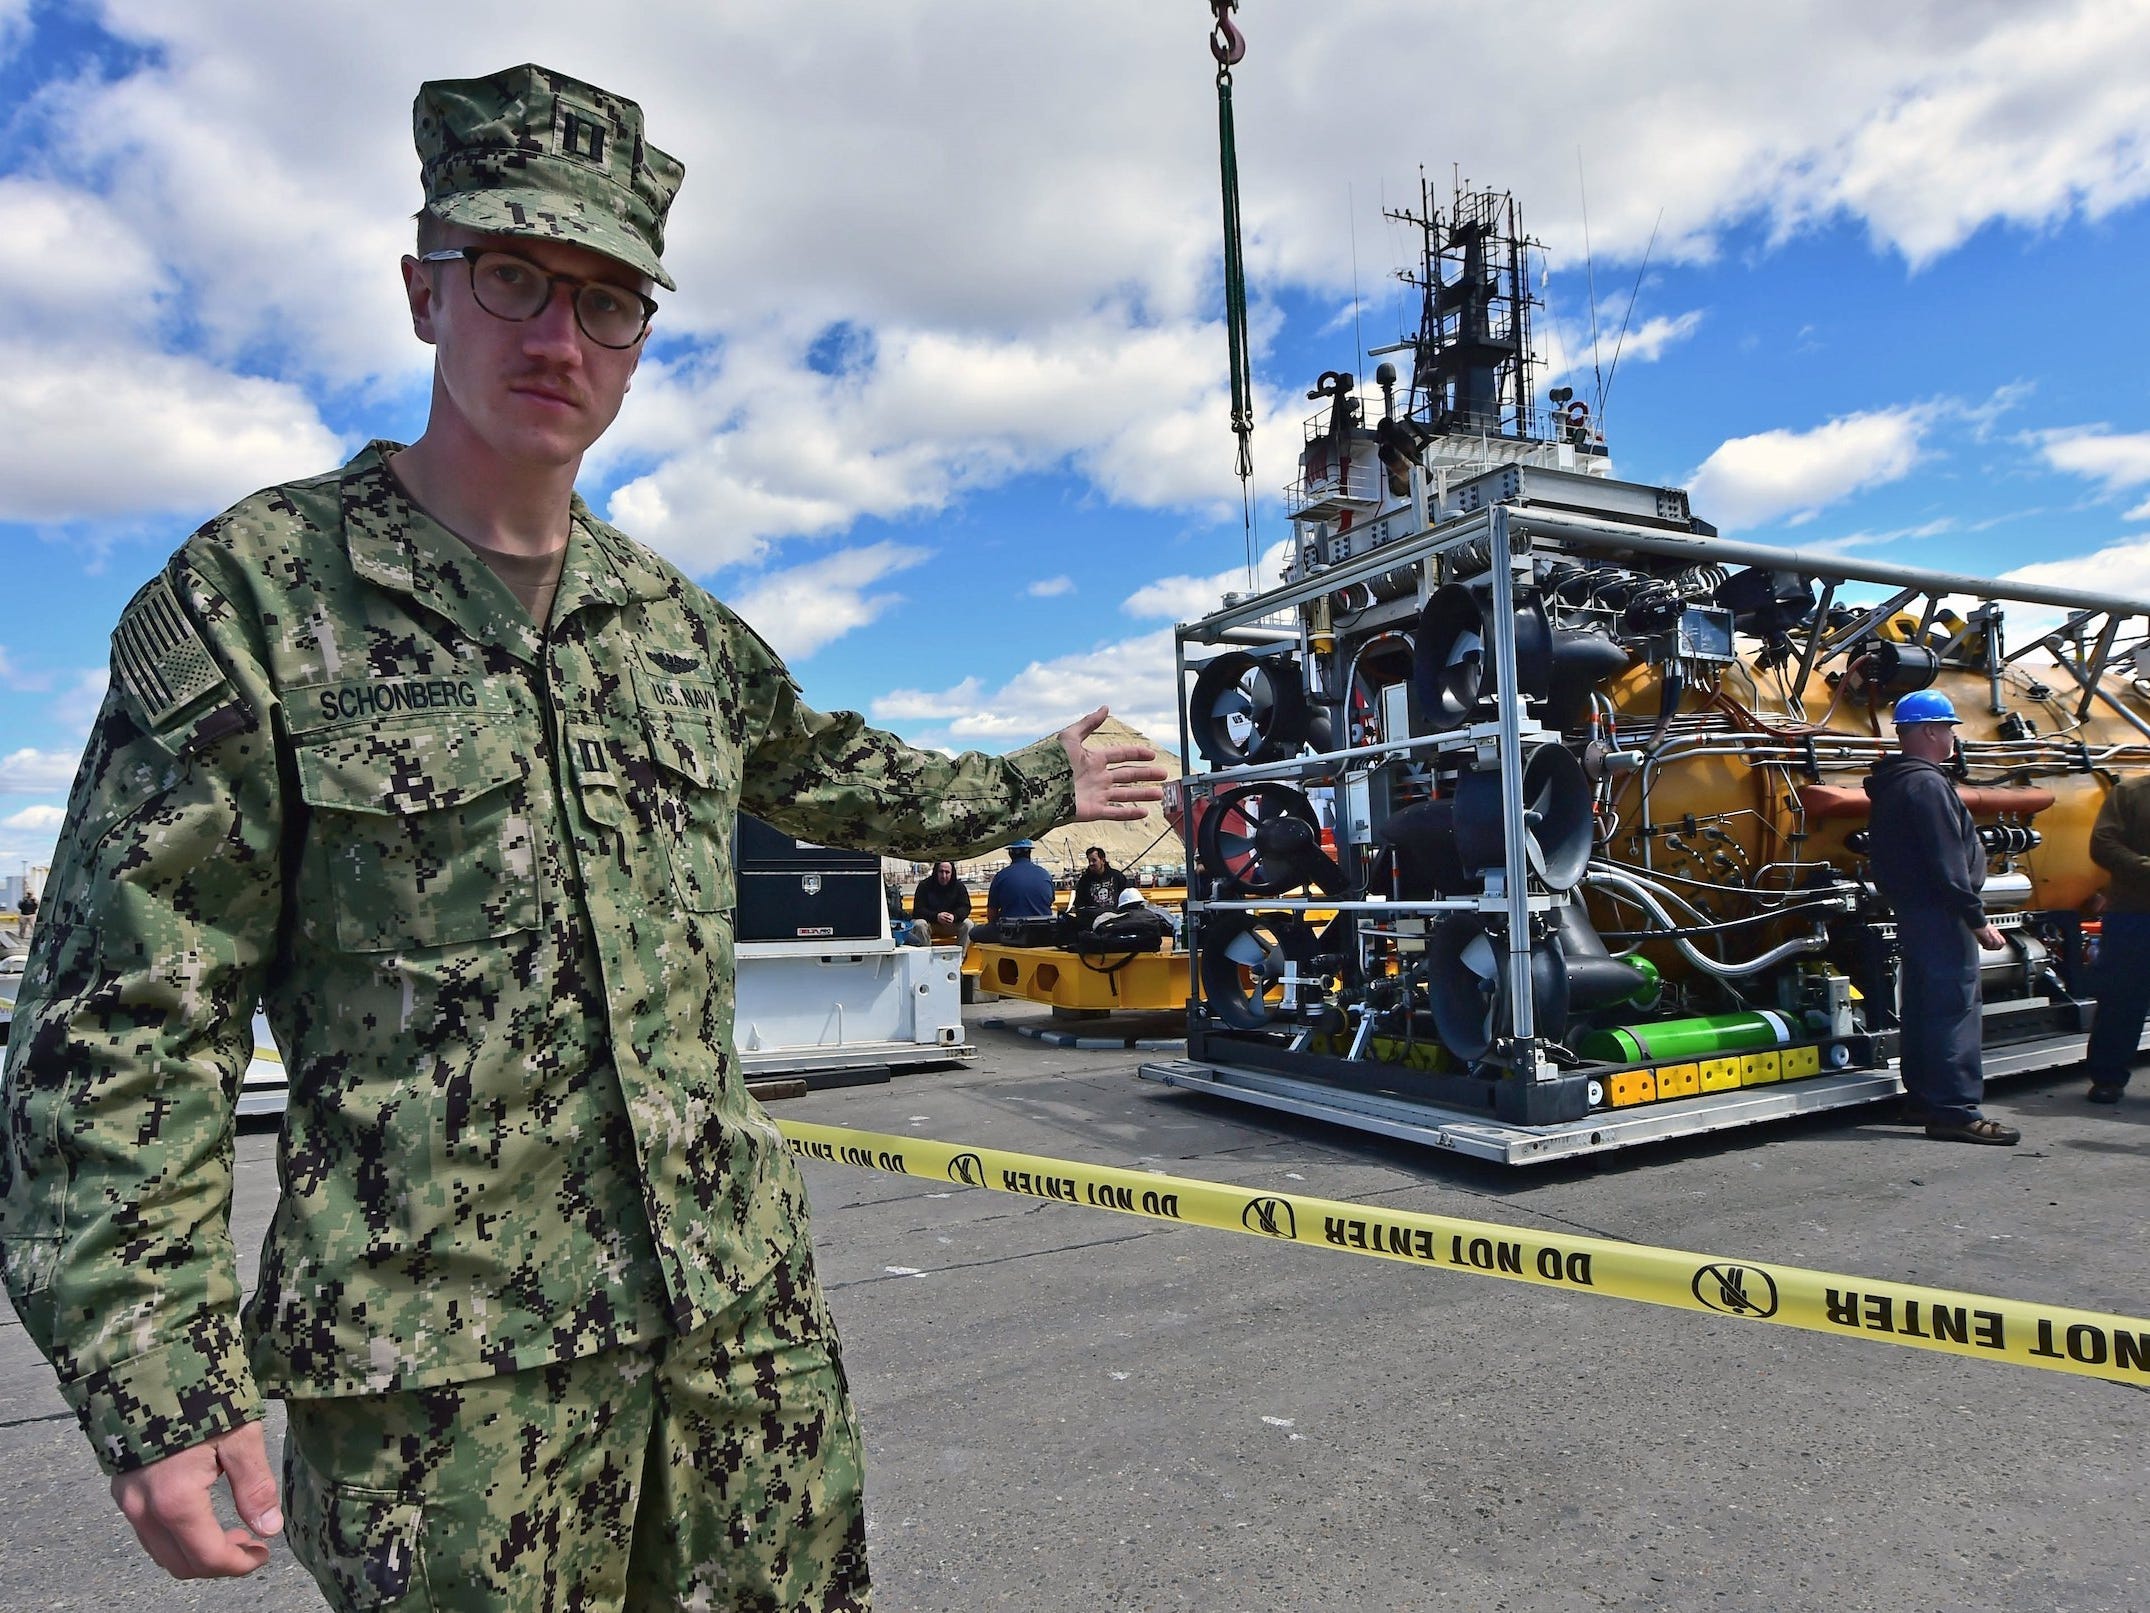 Ein Mitglied der US-Marine geht am Pressurized Rescue Module vorbei, das an der Suche und Rettung des vermissten U-Bootes ARA San Juan beteiligt sein wird